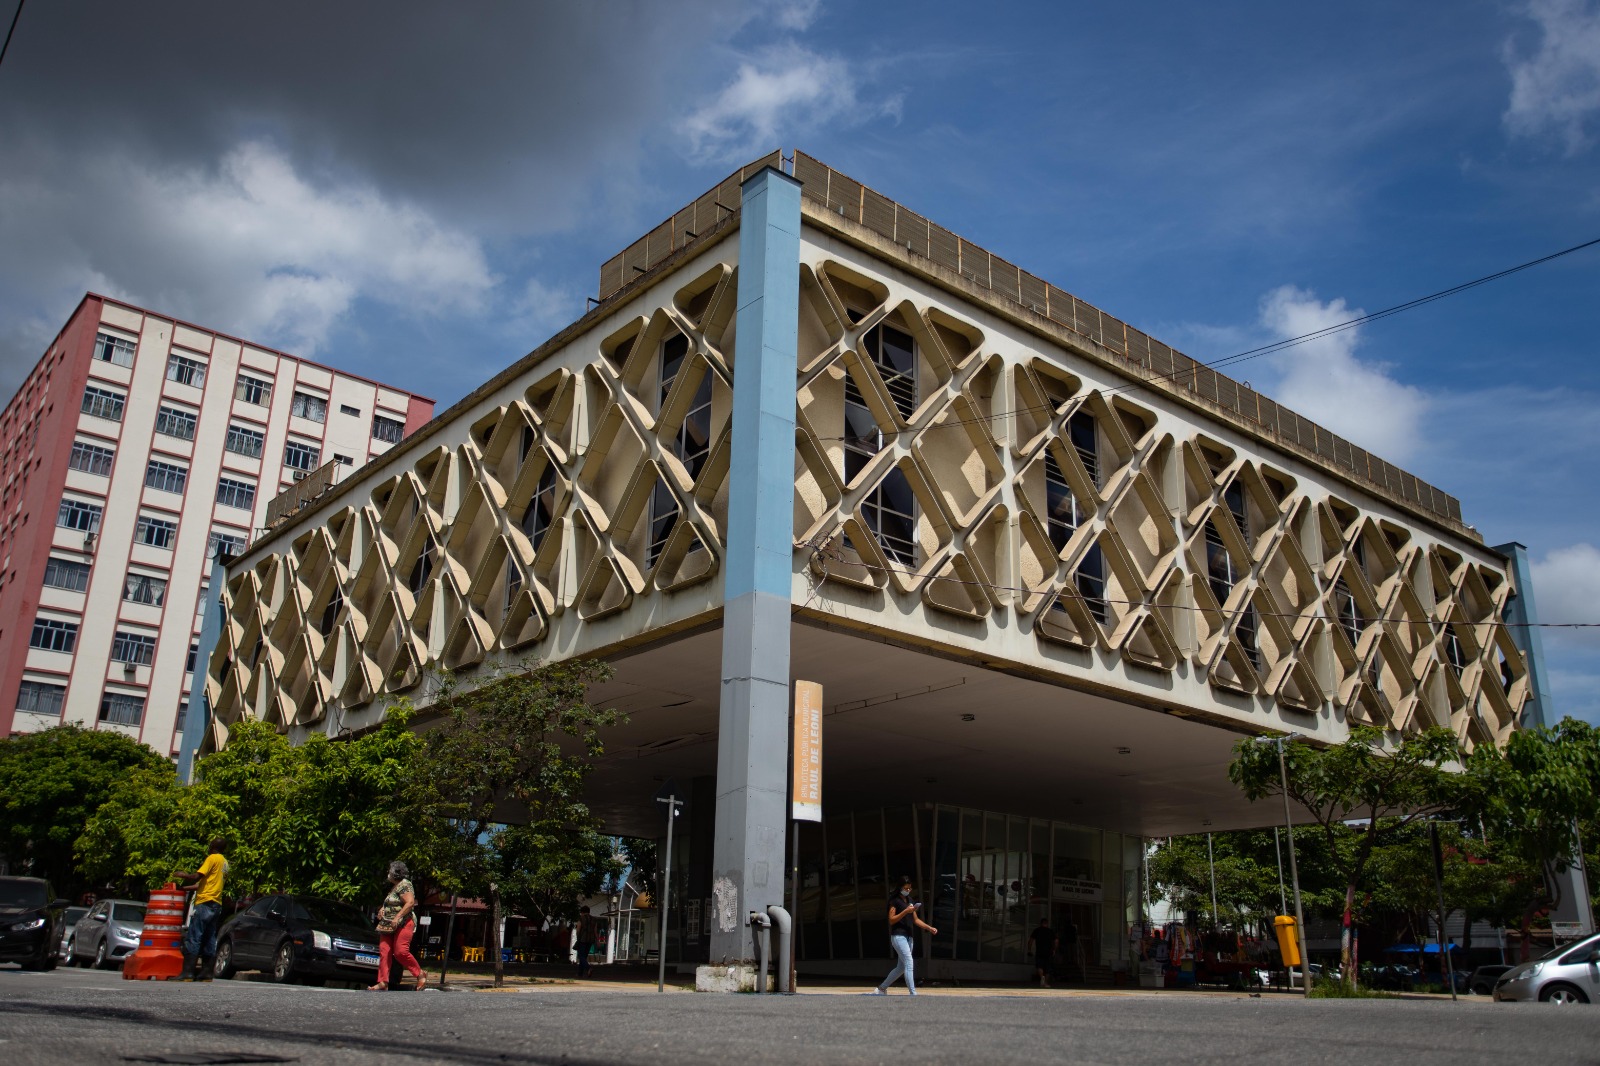 Biblioteca Municipal no Rio Comprido tem aulas de xadrez de graça -  Prefeitura da Cidade do Rio de Janeiro 